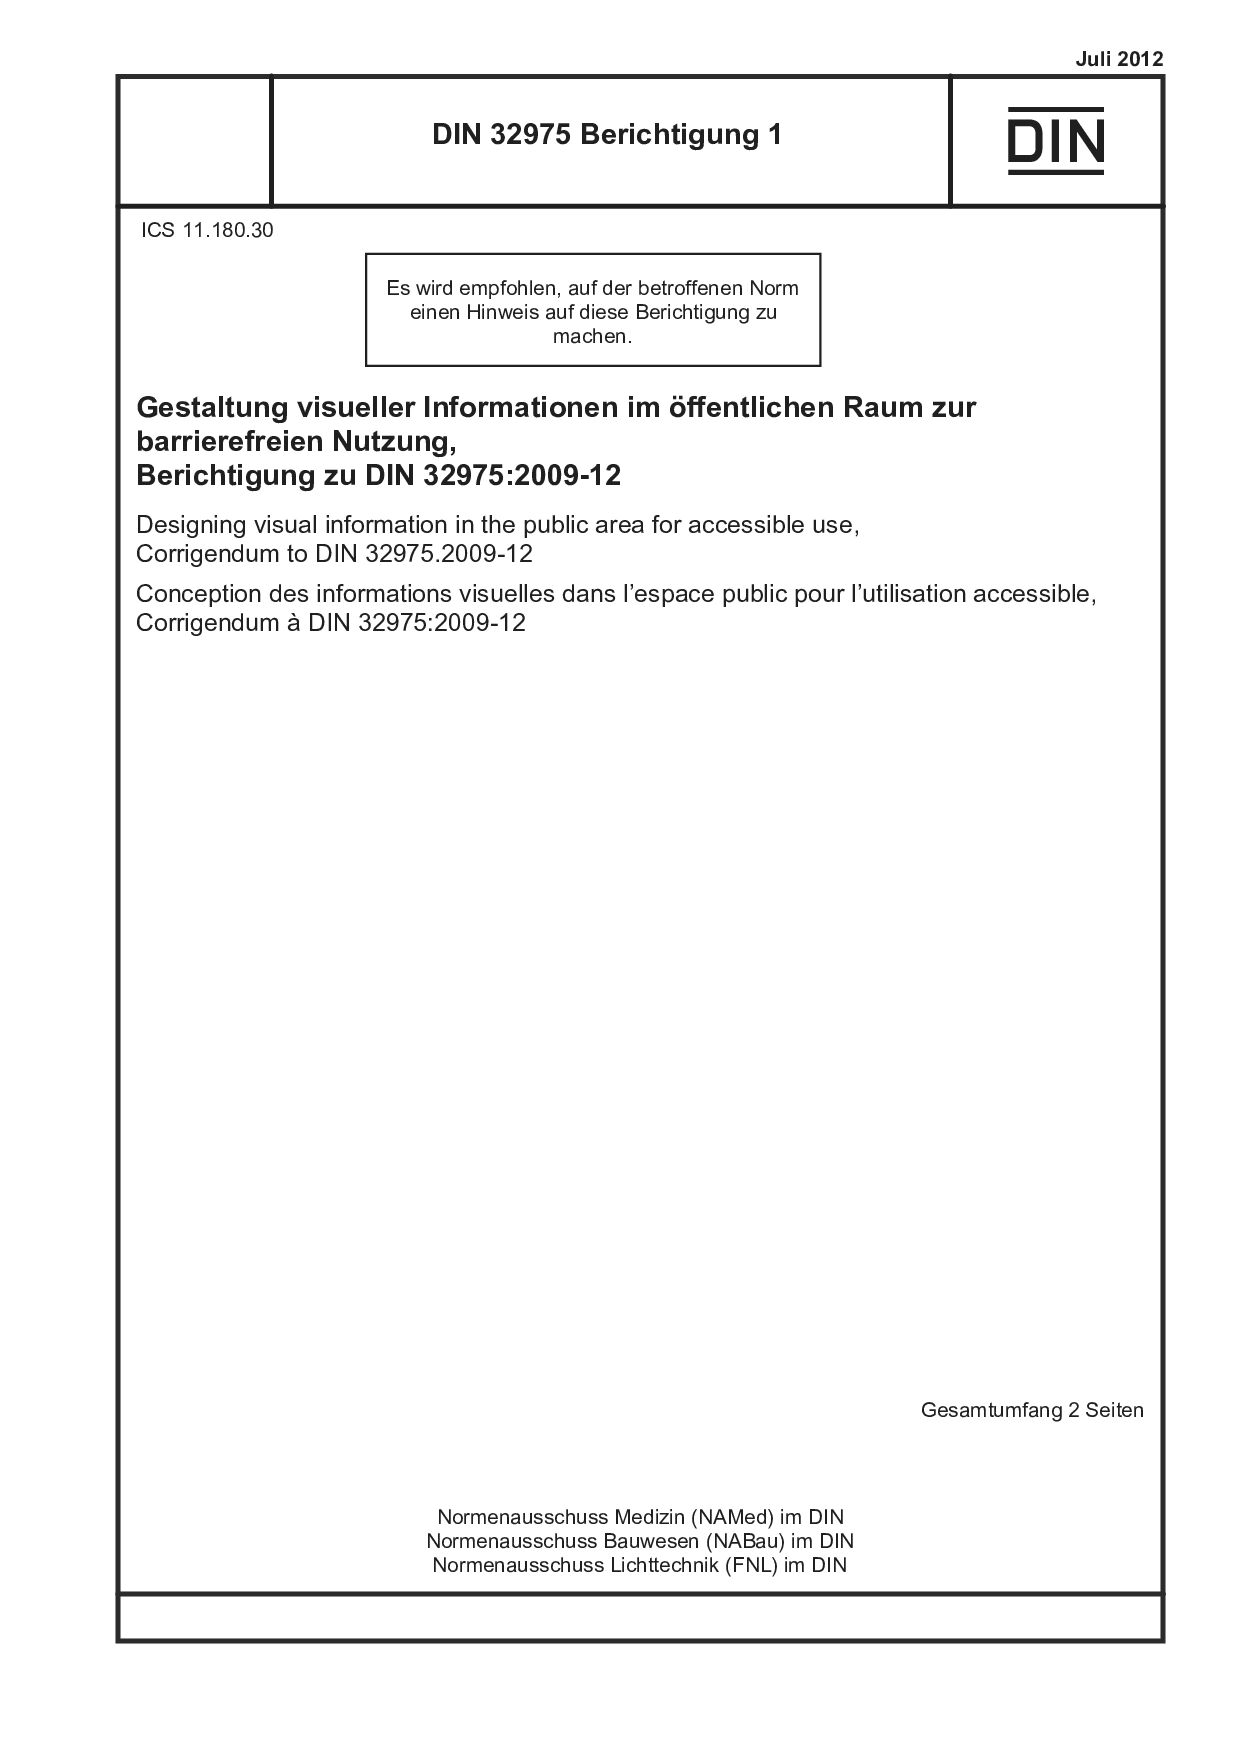 DIN 32975 Berichtigung 1:2012-07